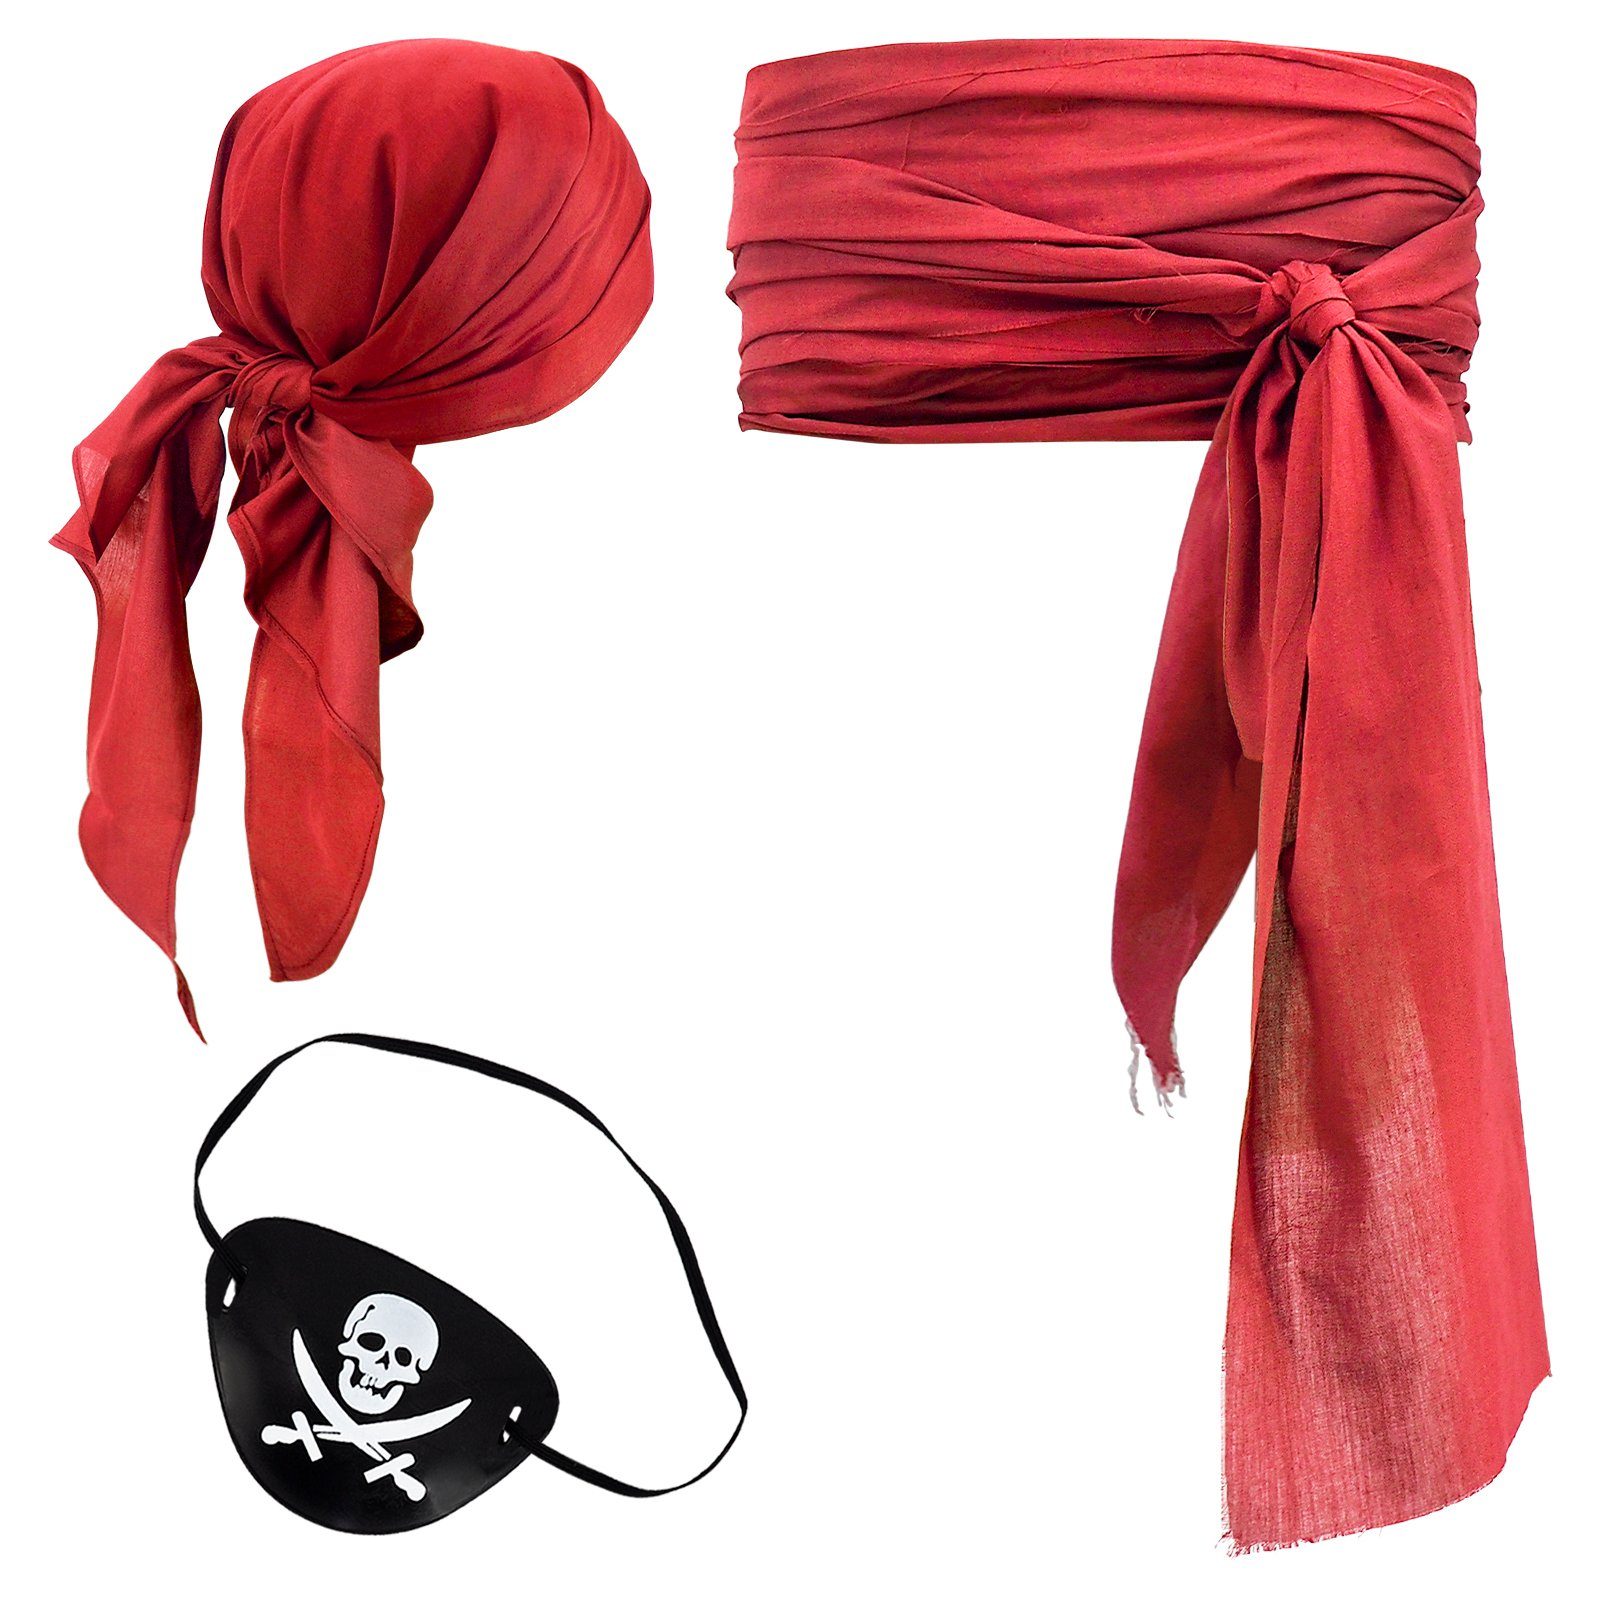 GalaxyCat Piraten-Kostüm Piraten Kostüm Set mit Kopftuch, Piratenschärpe & Augenklappe, Rot